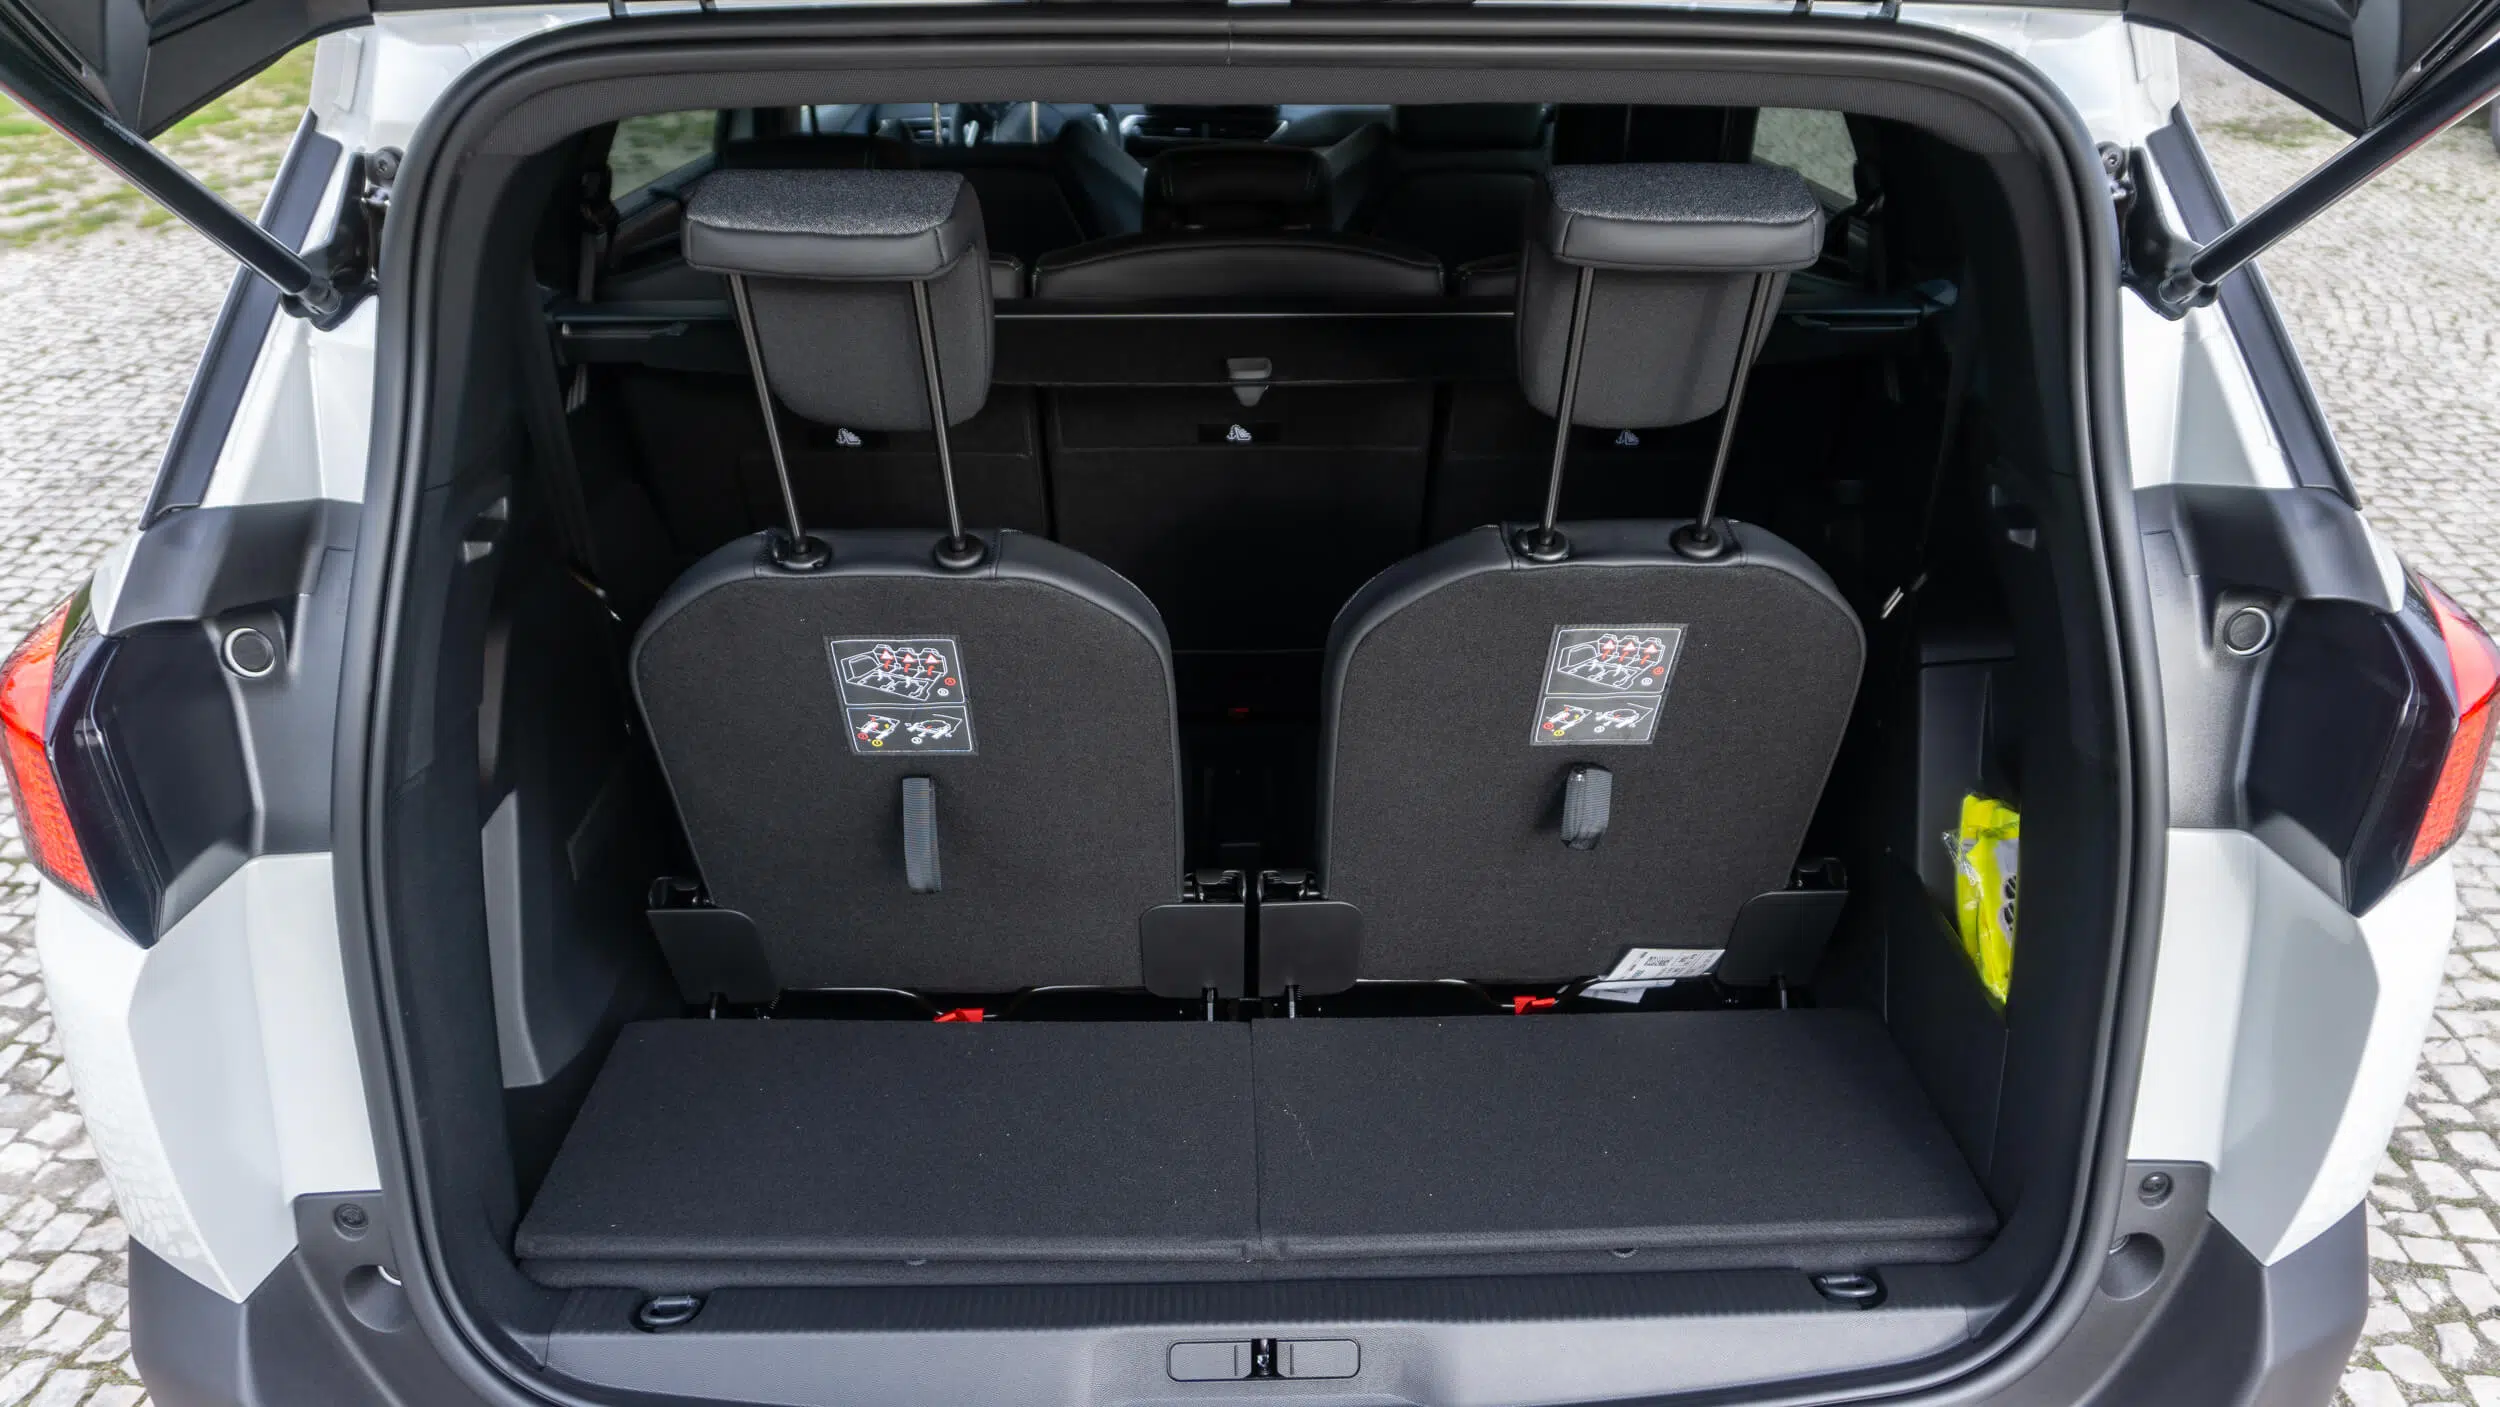 Peugeot 5008 Hybrid 48V - terceira fila de assentos montada